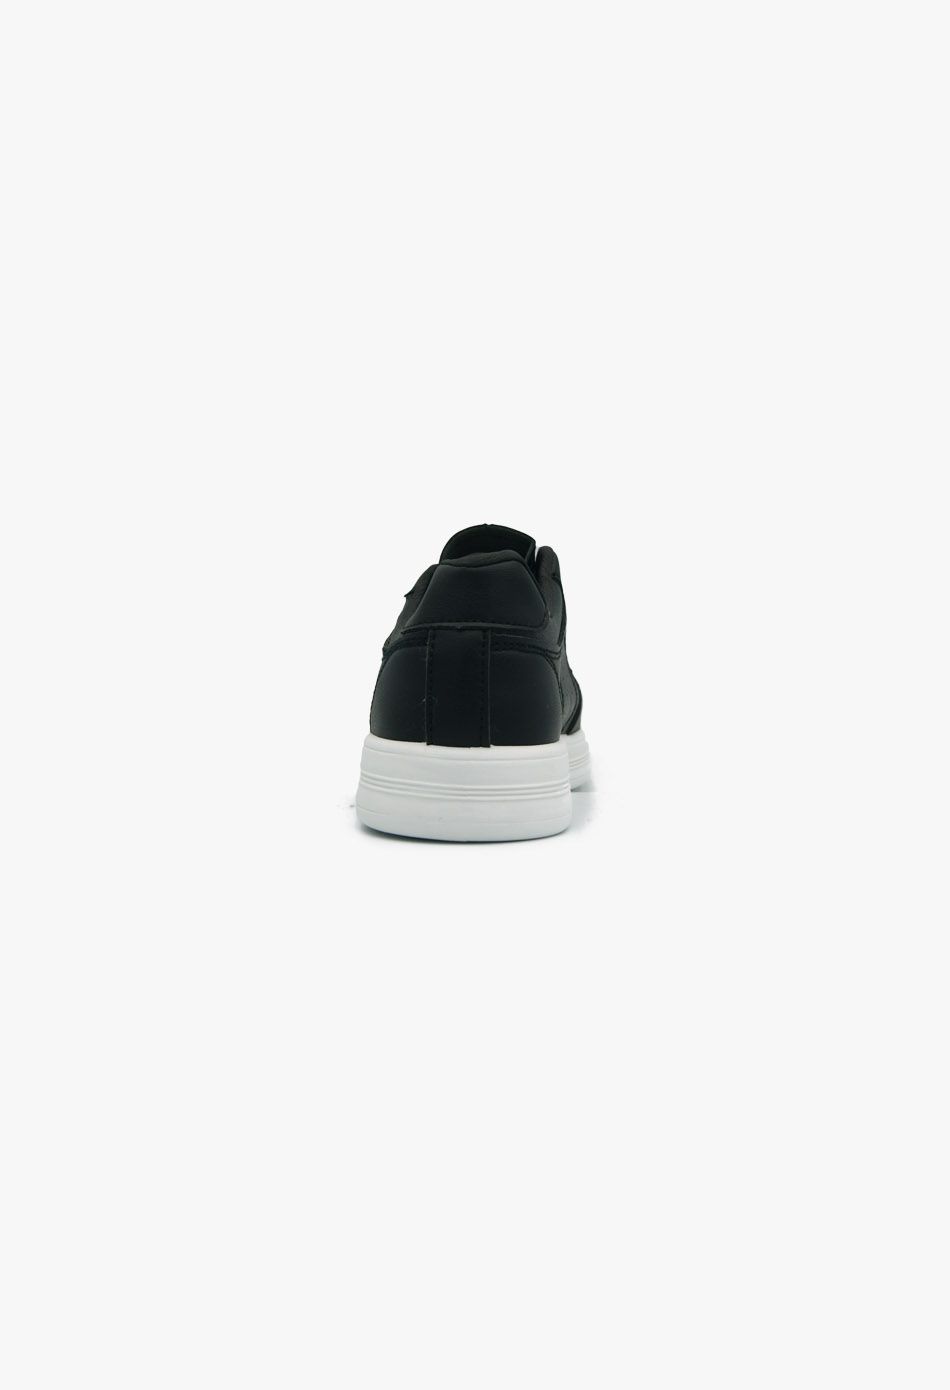 Γυναικεία Classic Sneakers Μαύρο / B03-black Γυναικεία Αθλητικά και Sneakers joya.gr